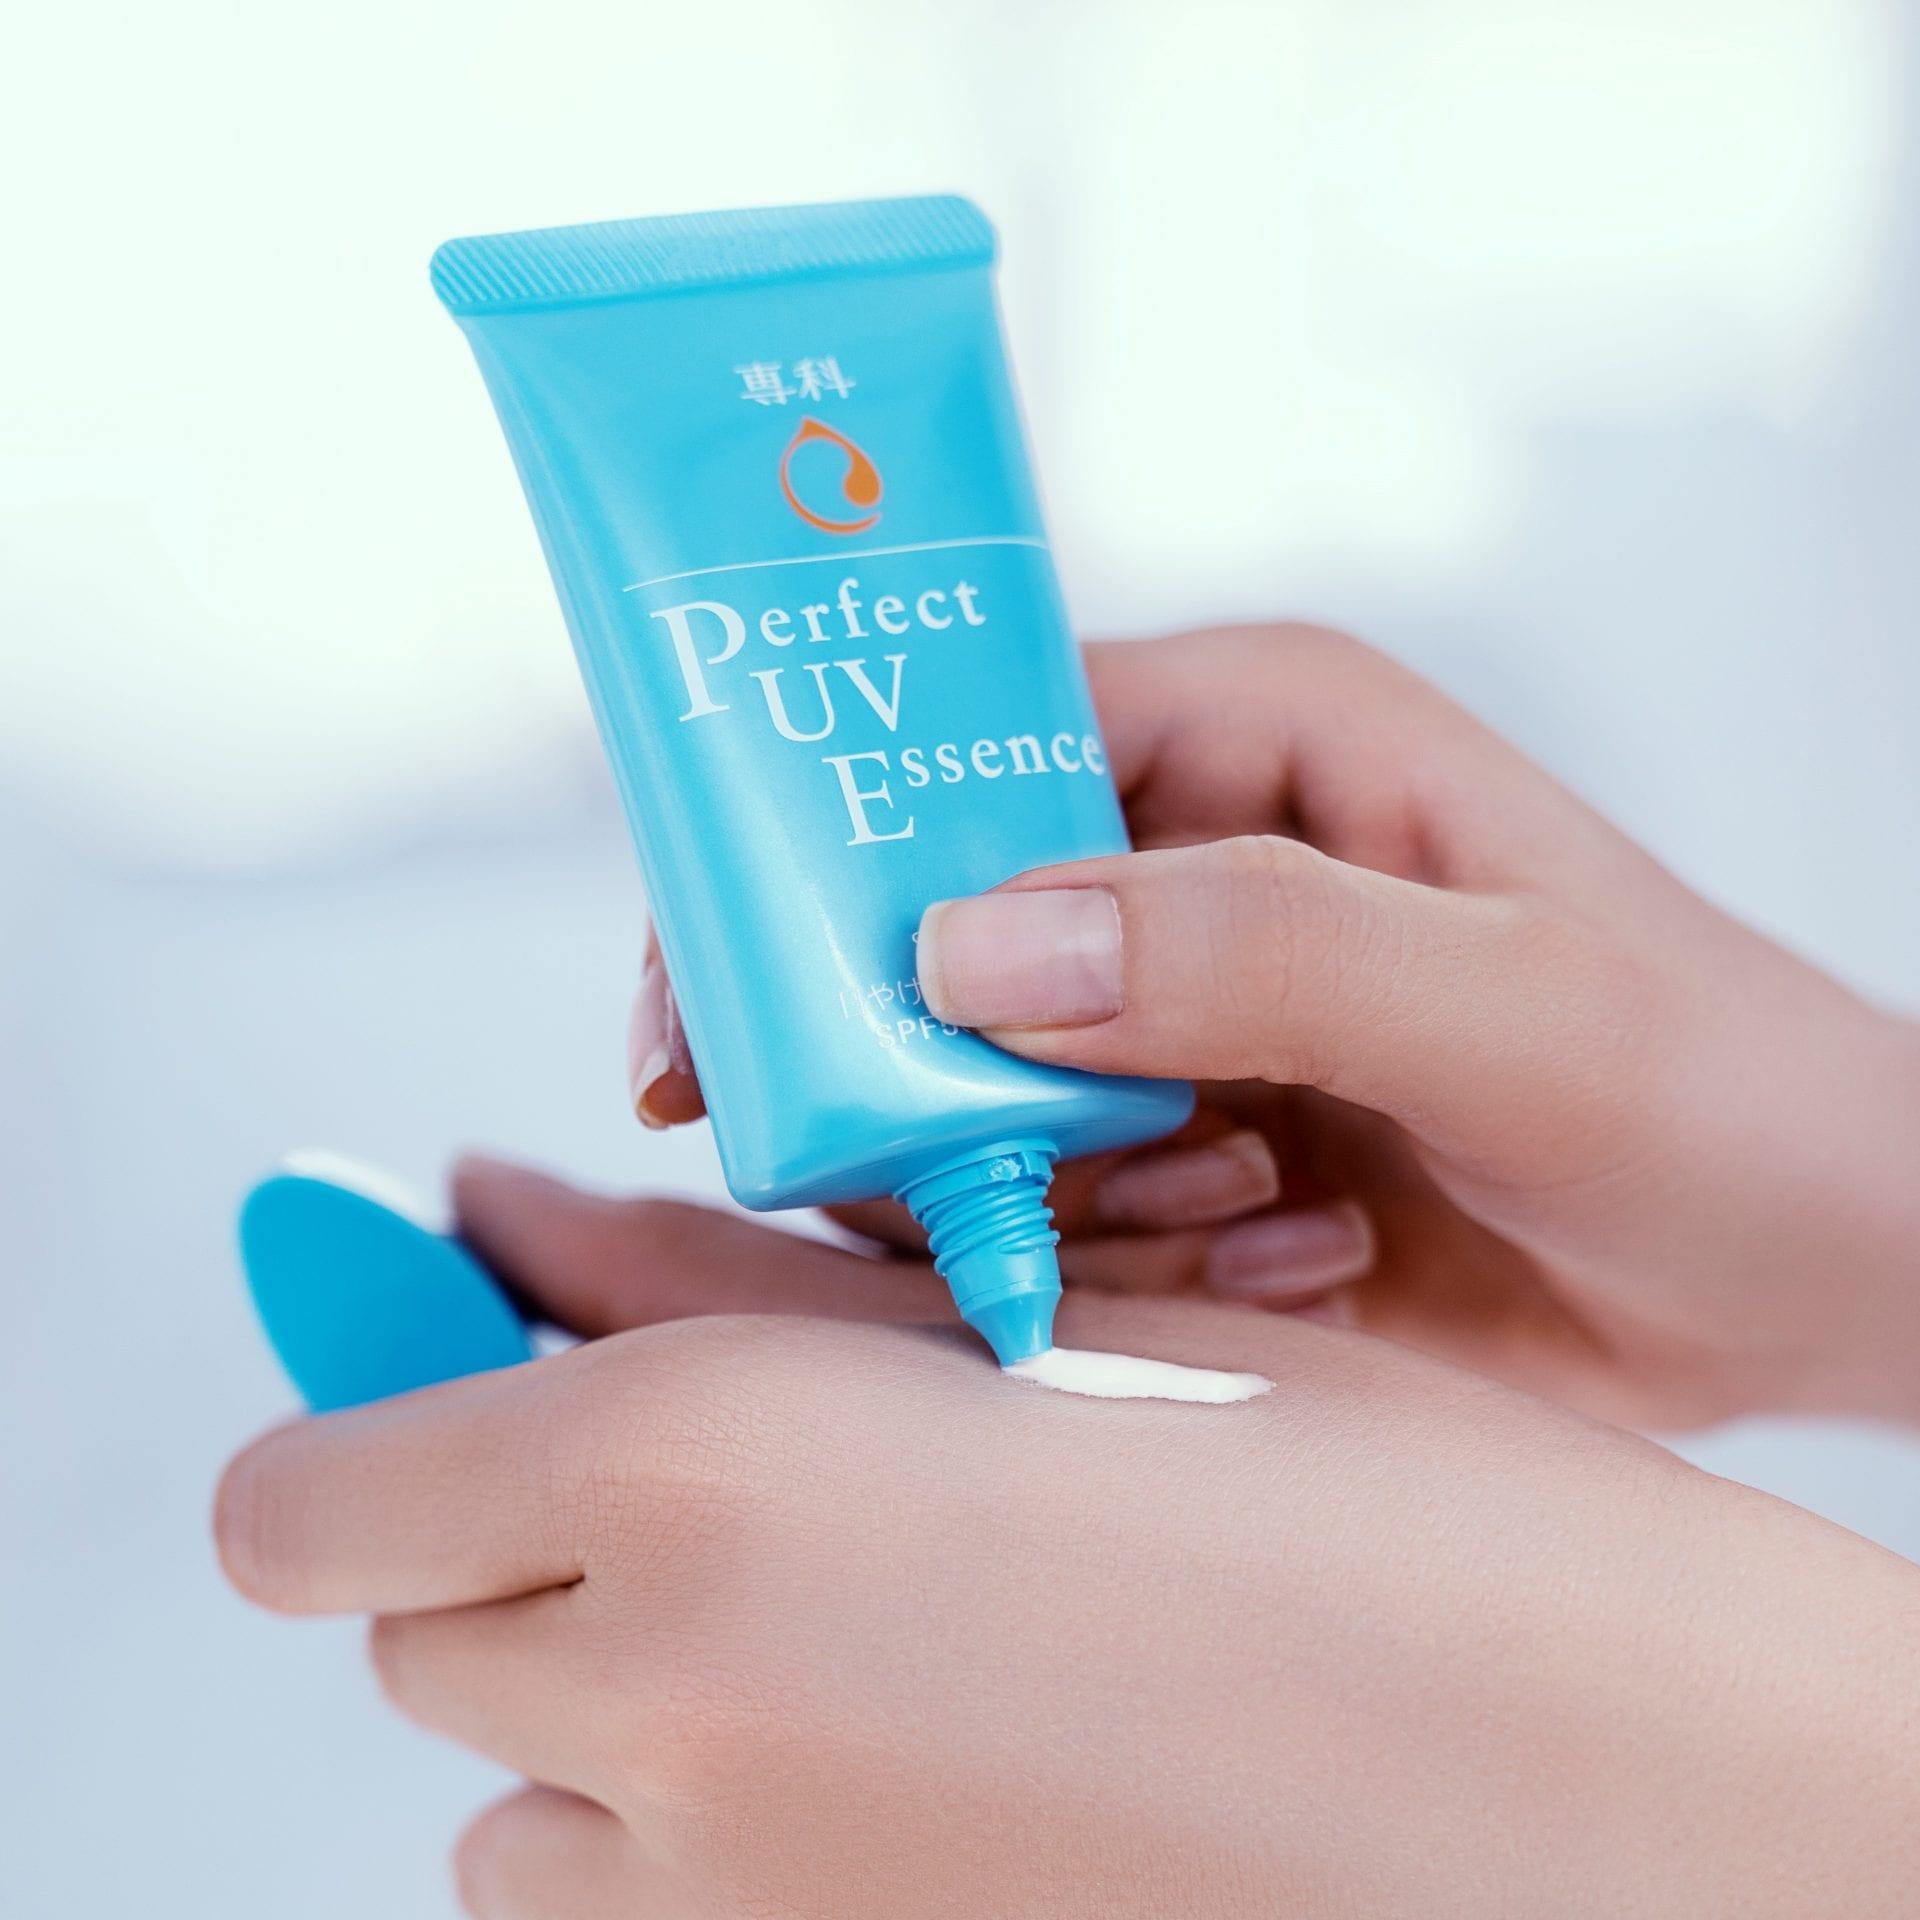 Senka Perfect UV Essence với khả năng nâng tone, giúp da bạn sáng hơn 1,2 tone so với da thường. ( Nguồn: internet)